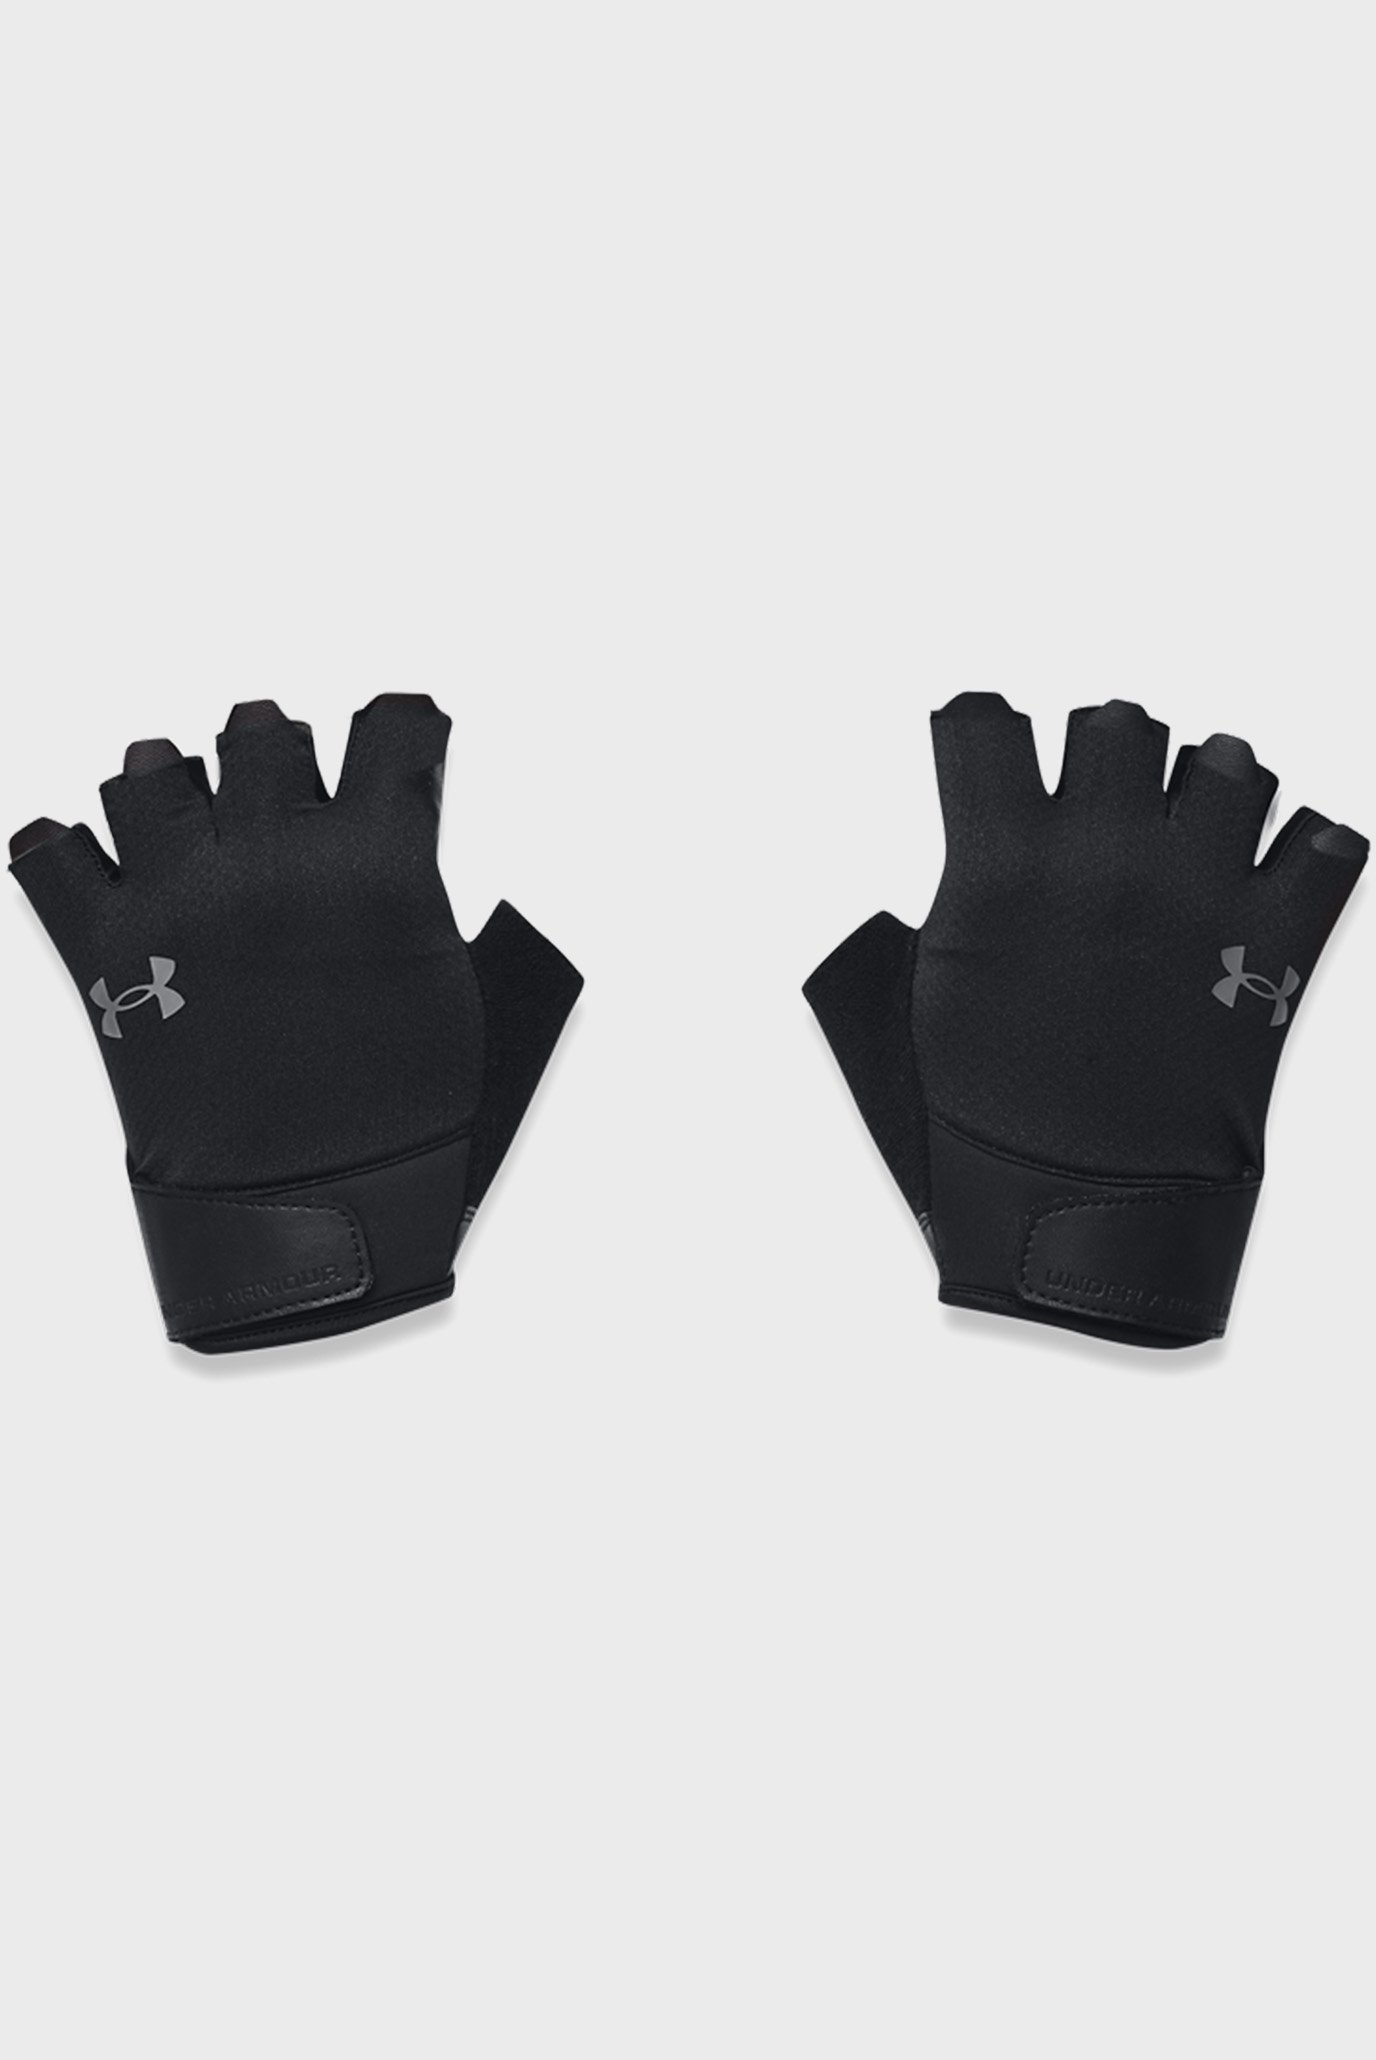 Мужские черные перчатки M's Training Gloves 1